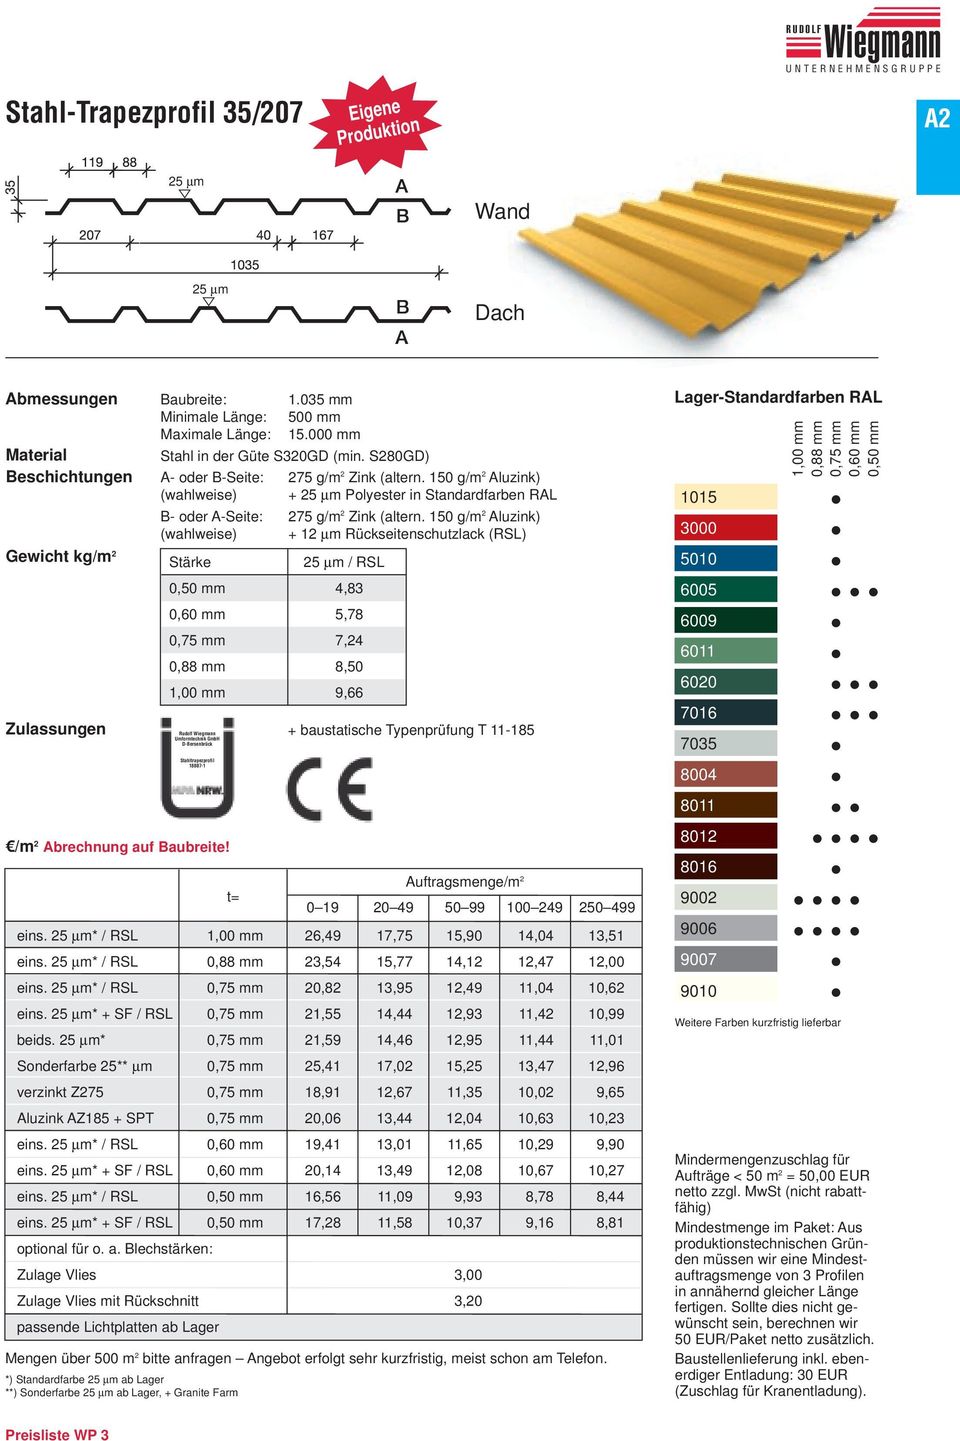 150 g/m 2 Aluzink) (wahlweise) + 25 µm Polyester in Standardfarben RAL B- oder A-Seite: 275 g/m 2 Zink (altern.